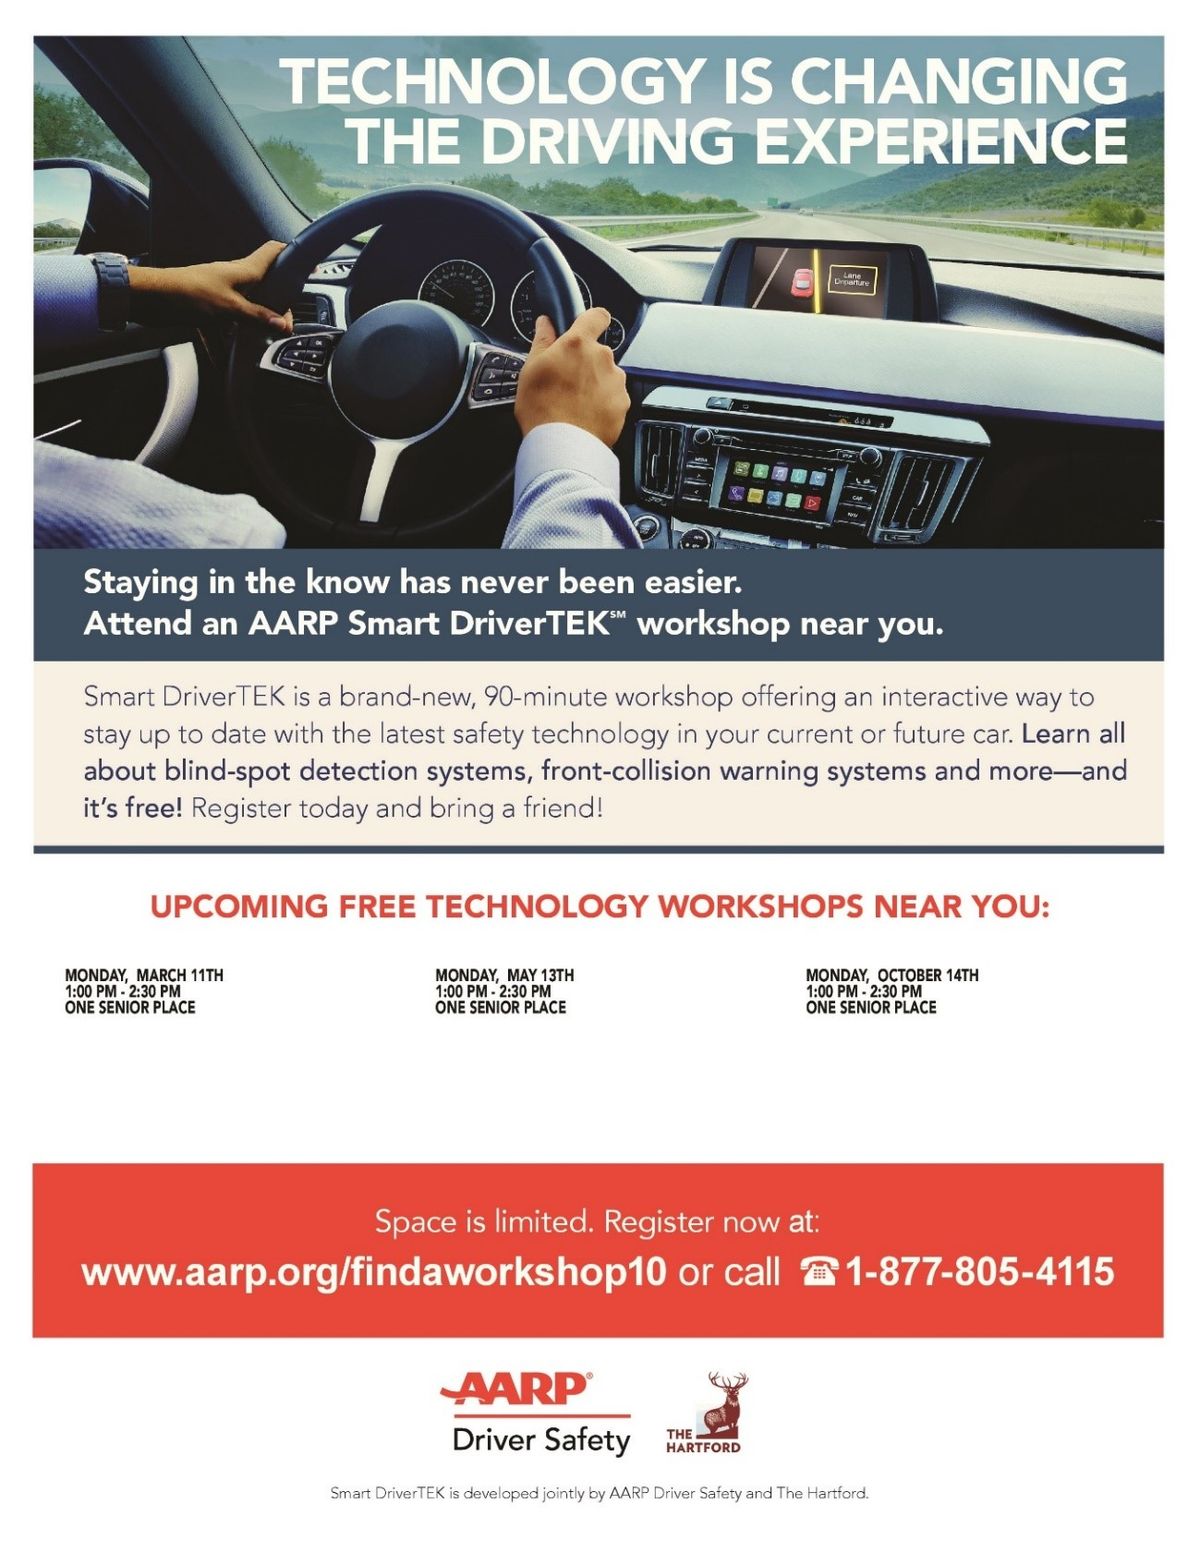 AARP SmartDriver Tek Program 